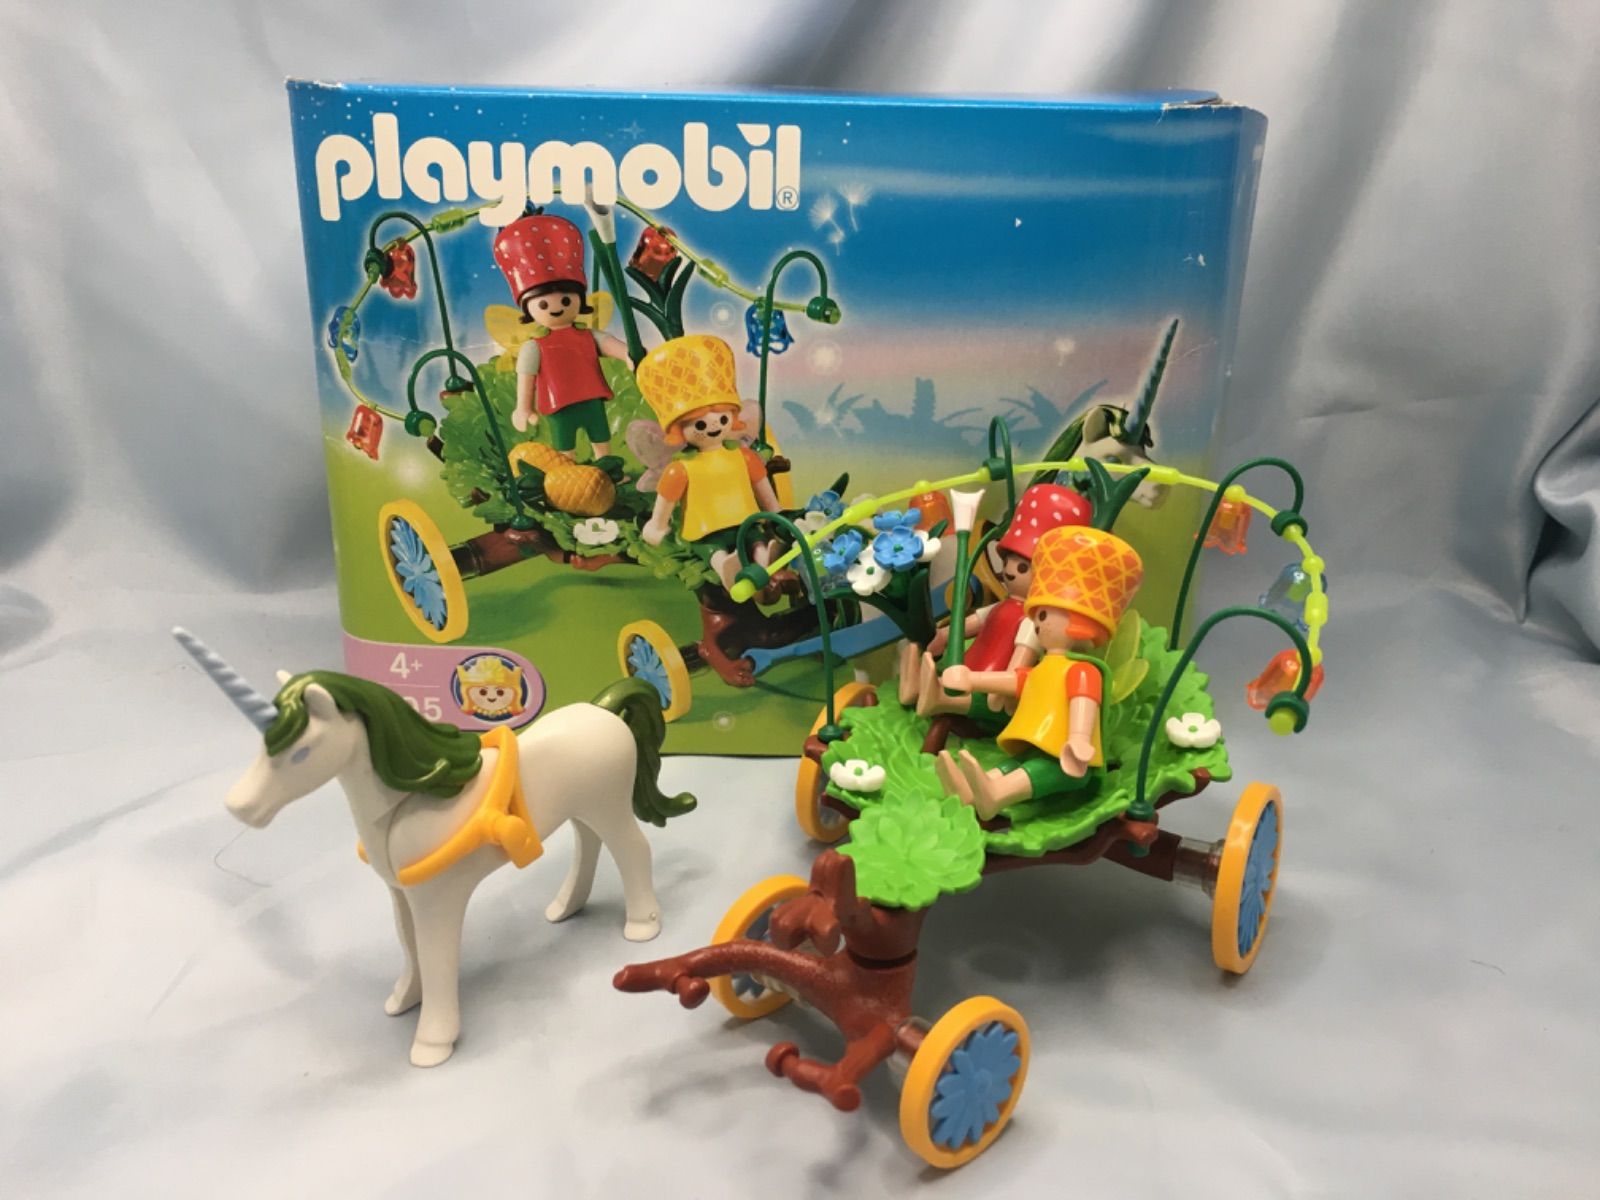 Playmobil(プレイモービル) おとぎの国のお城 お花の妖精の花園 4199-